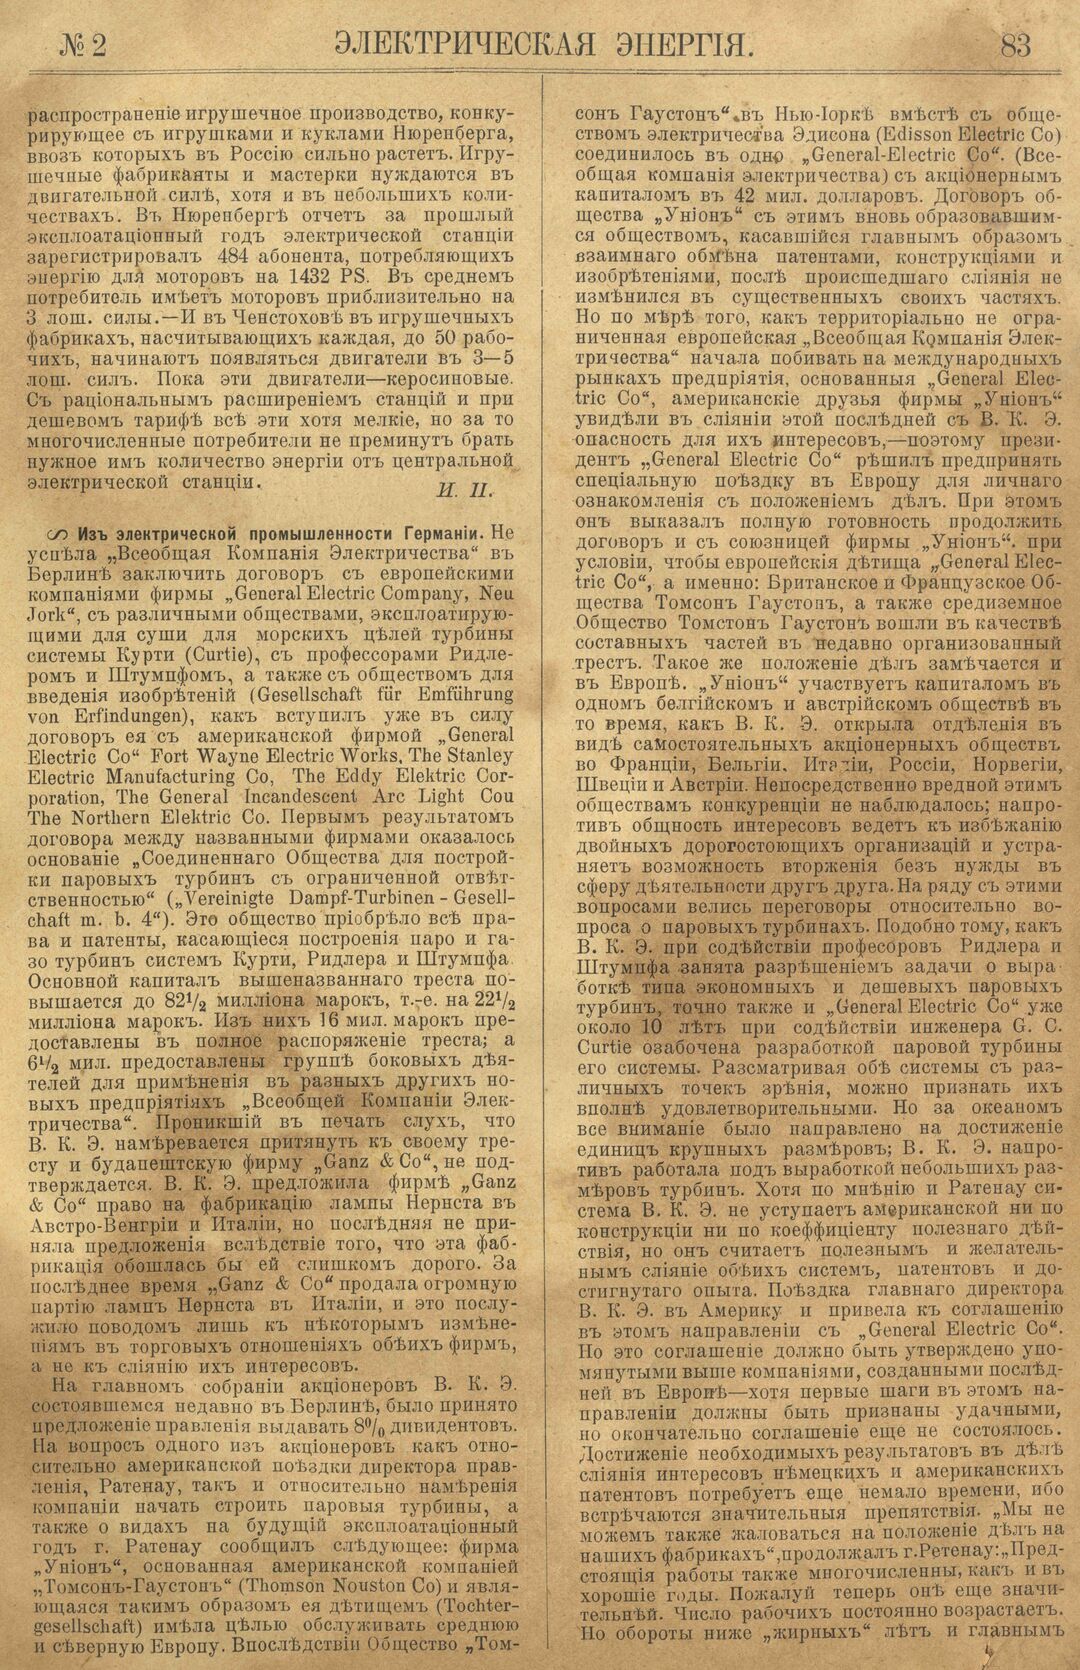 Рис. 1. Журнал Электрическая Энергiя, 2 номер, февраль, 1904 года, страница 83